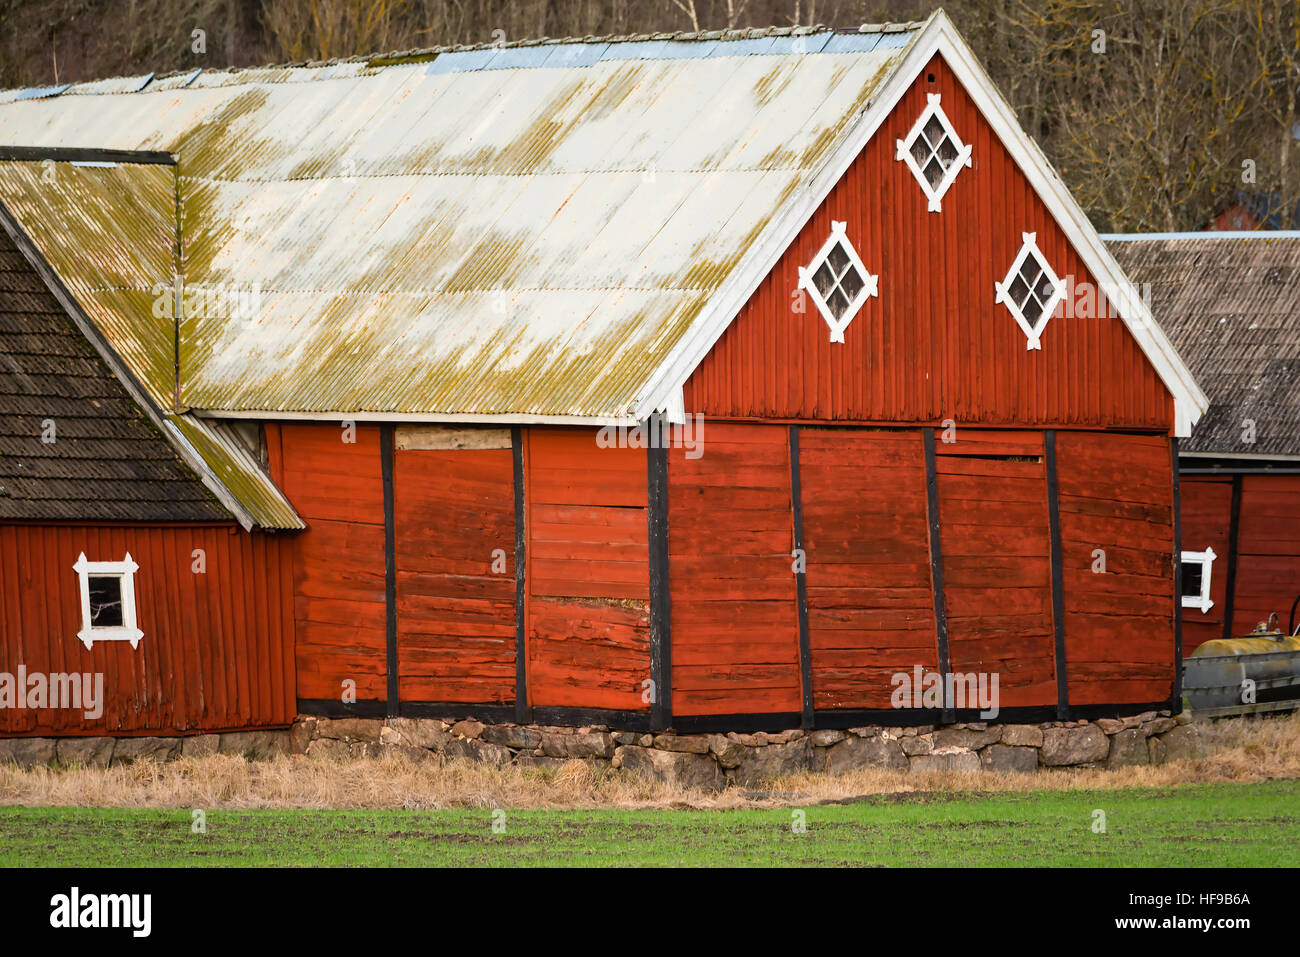 Ronneby, Suède - 27 décembre 2016 : Documentaire de vie rural en Suède. Grange en bois rouge avec gable champ wintergreen en premier plan. Banque D'Images